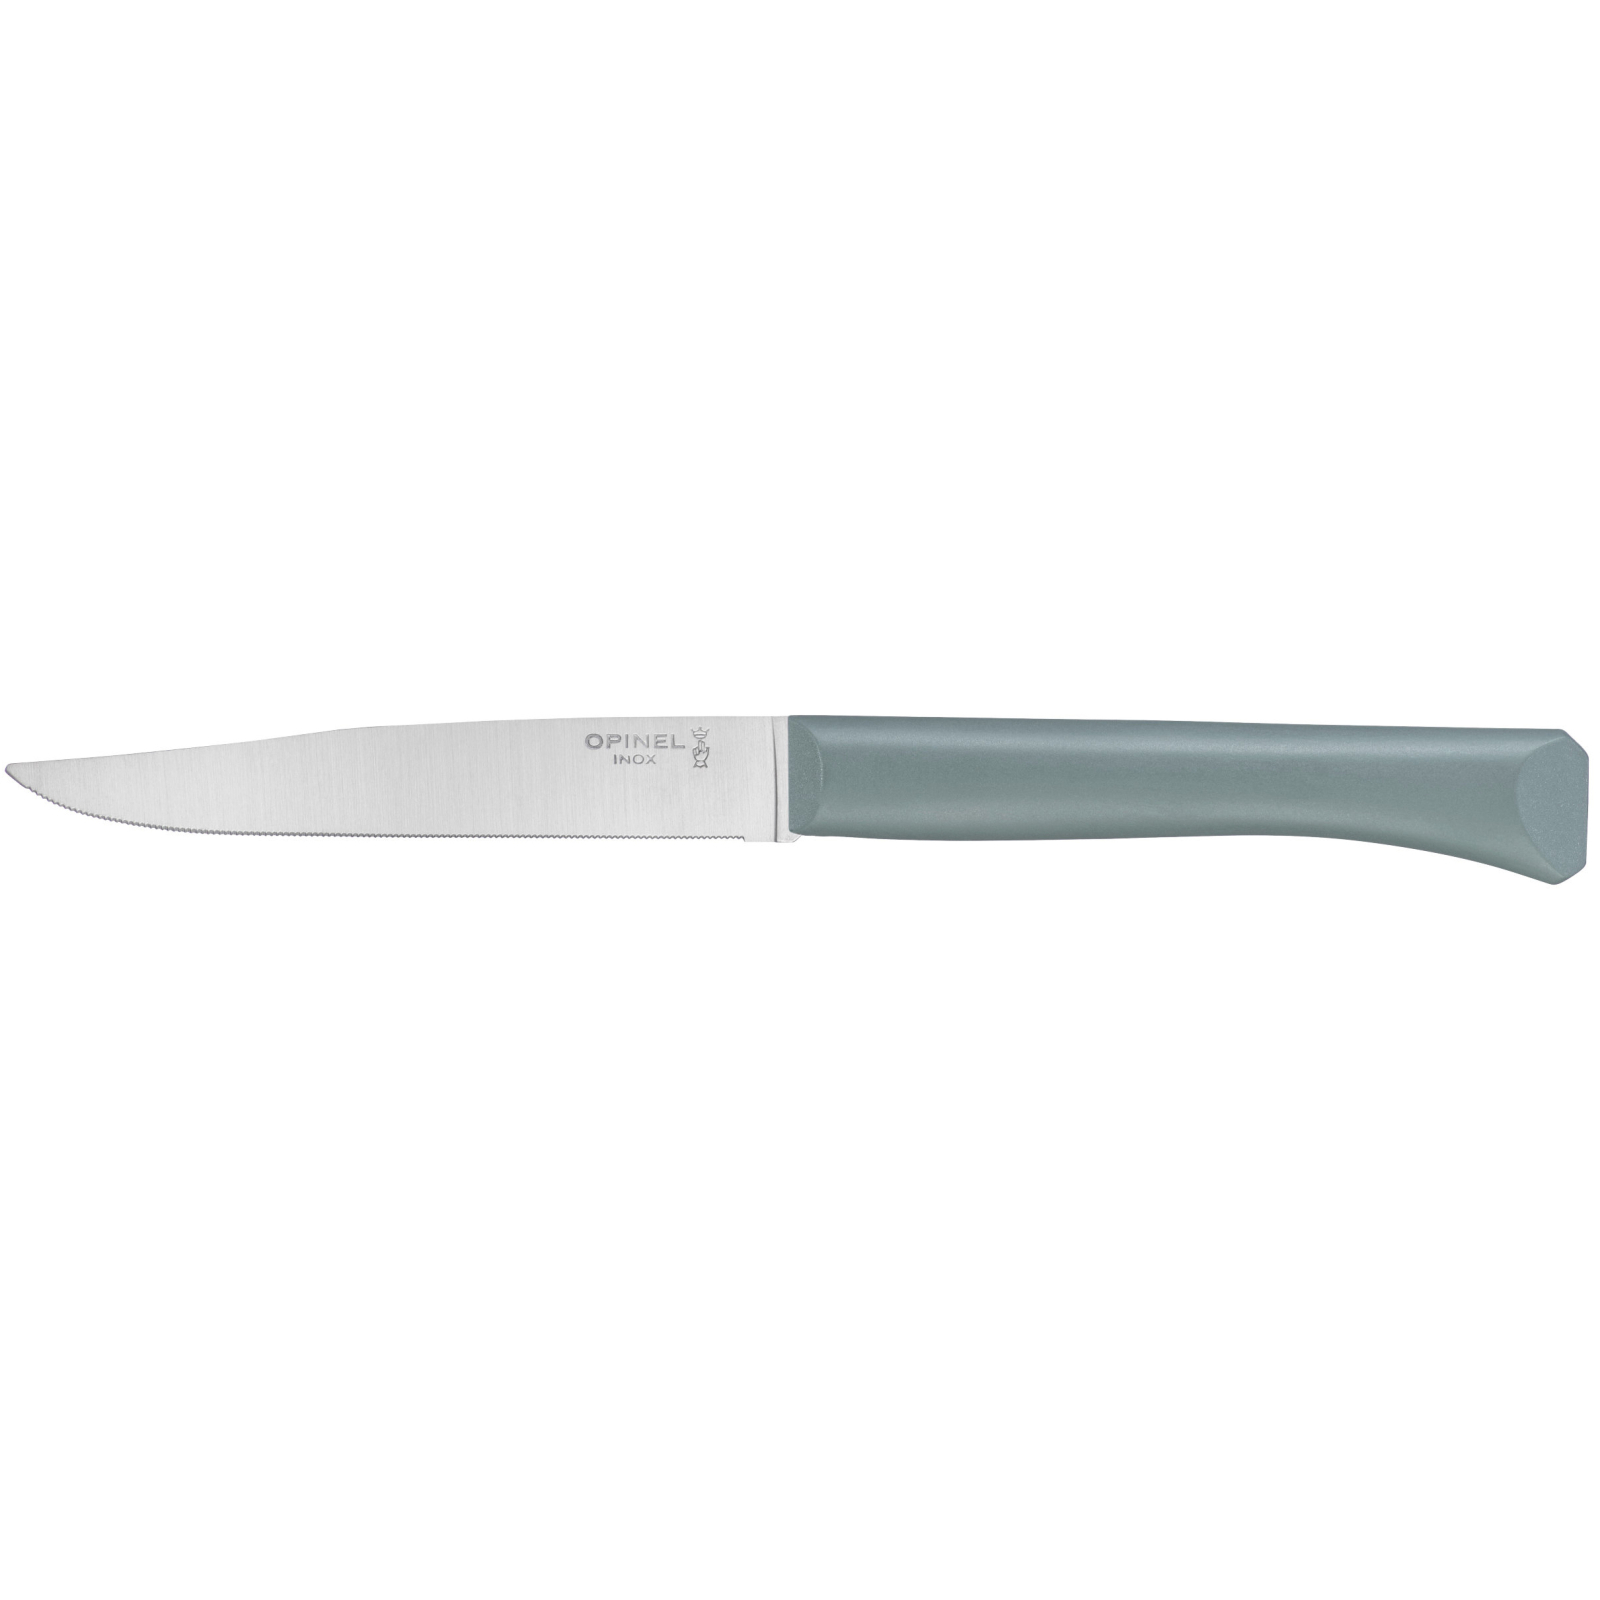 Кухонный нож Opinel Bon Appetit Plus 11 см Mint (002195)